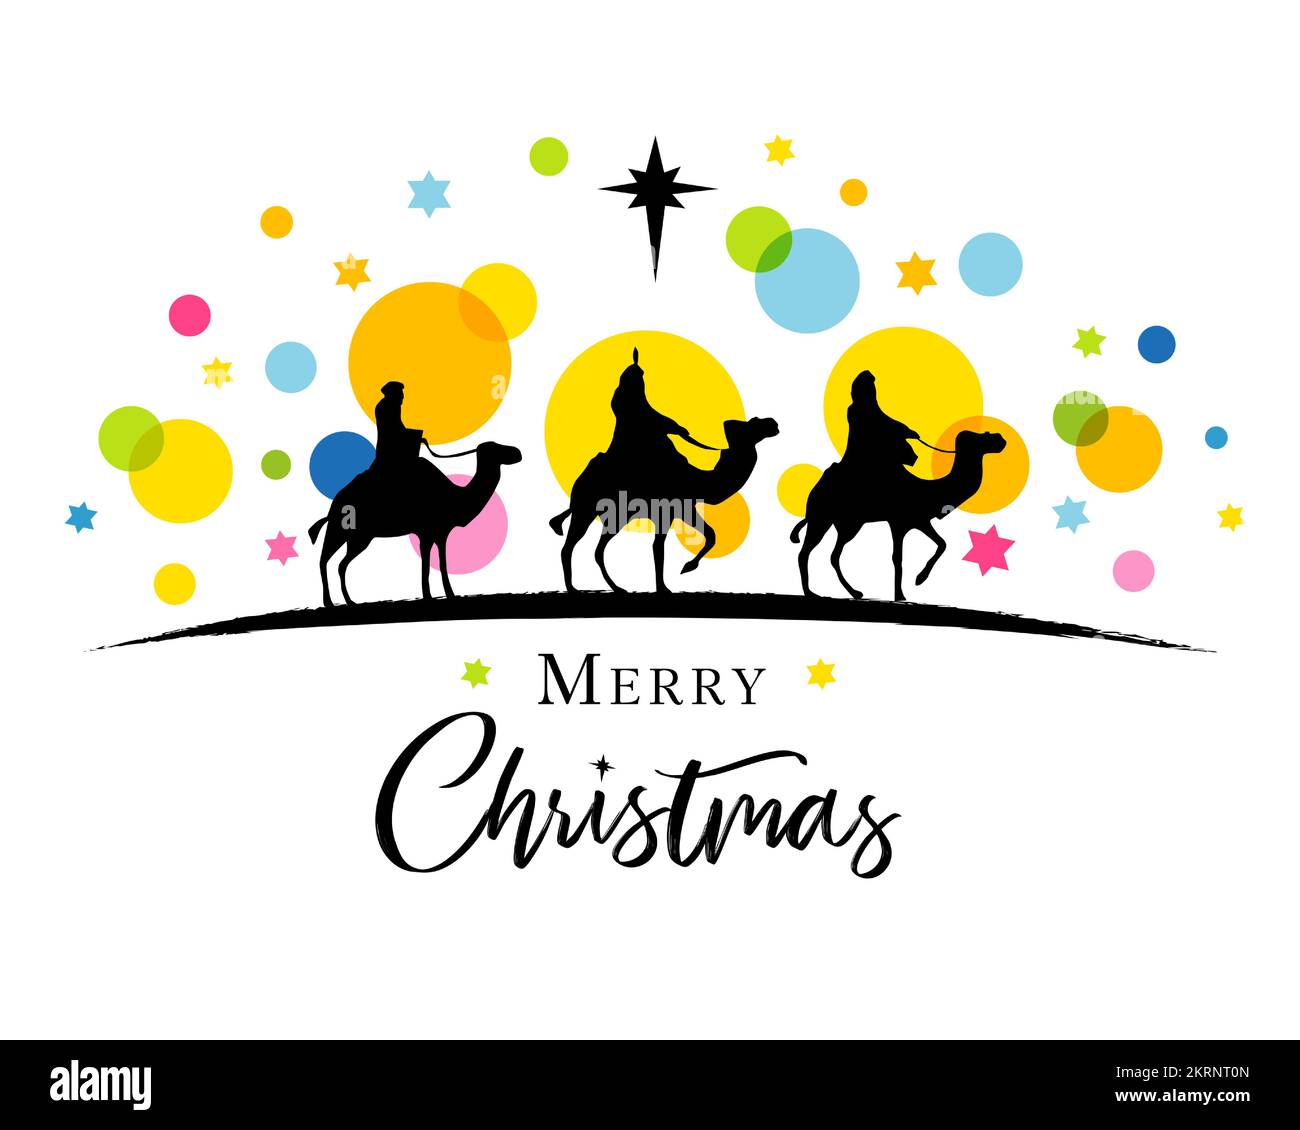 Trois sages en silhouette sur des confettis et des étoiles de couleur. Scène de Nativité avec trois rois, chameaux et étoile de Bethléem. Illustration vectorielle Illustration de Vecteur